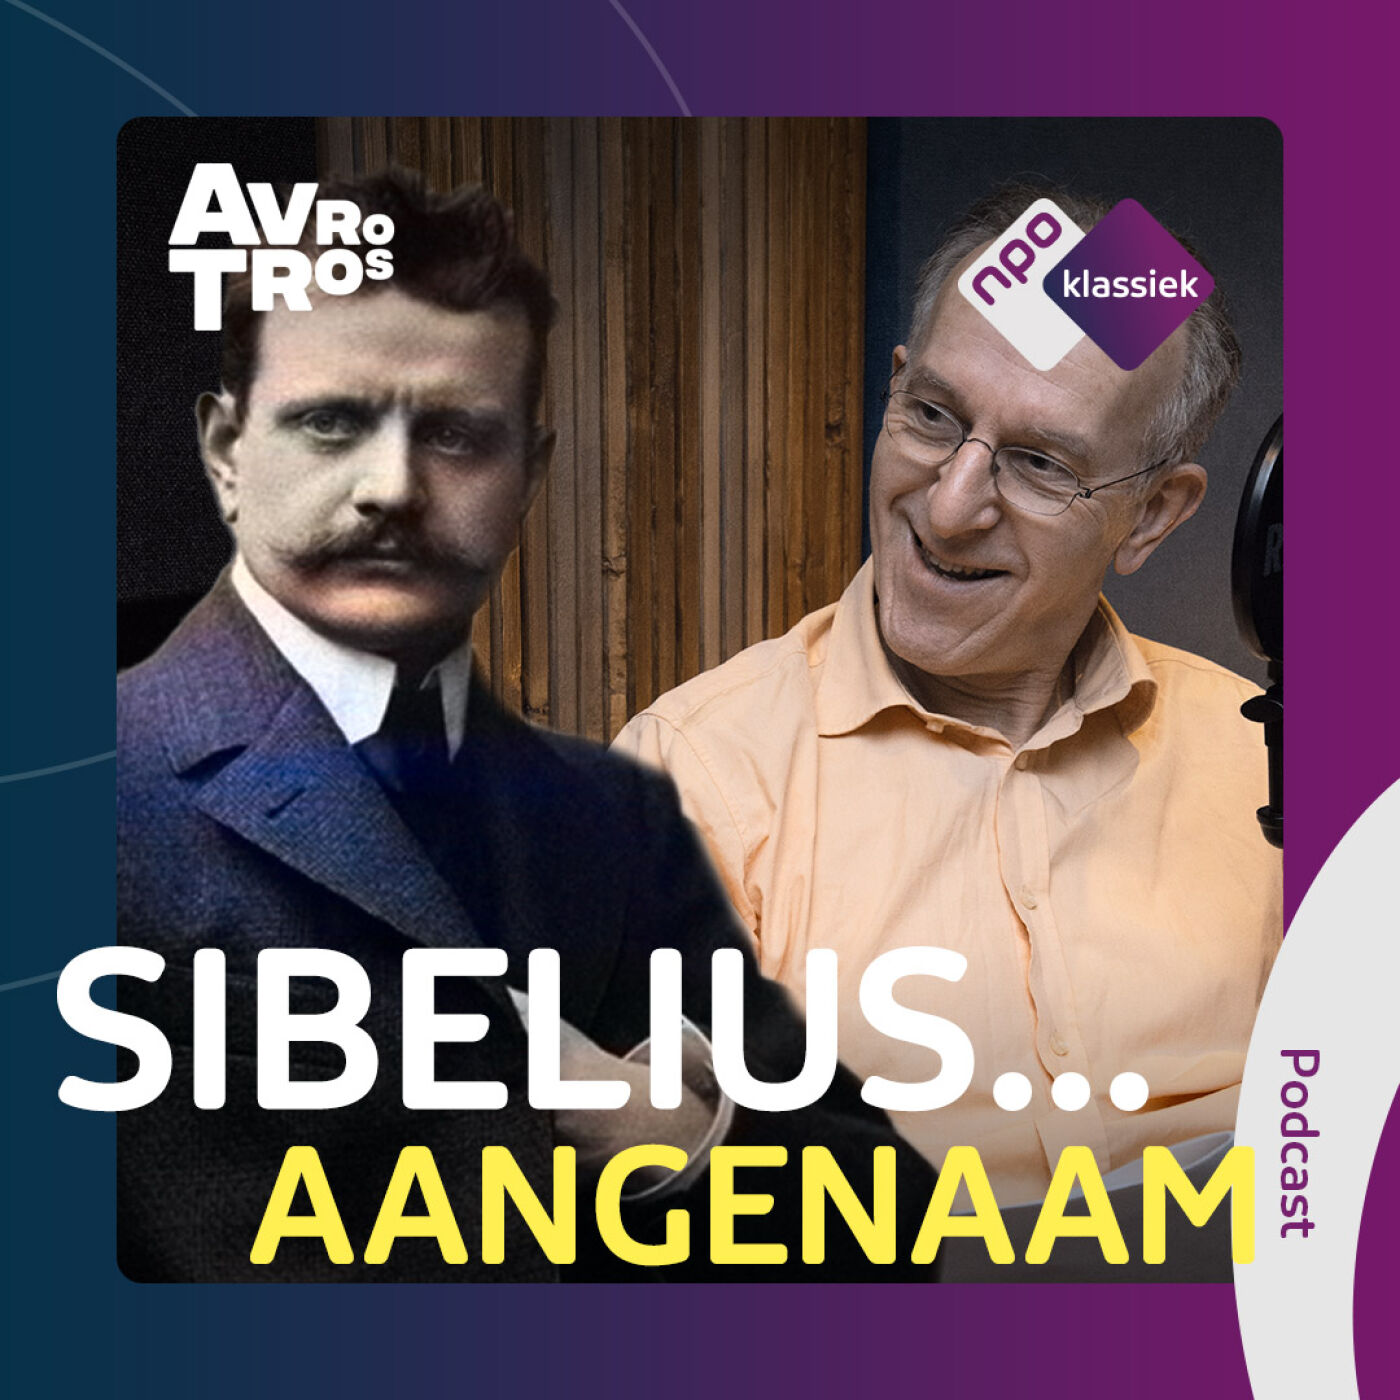 #3 - Sibelius... Méér dan Finlandia! - 3. Het onafhankelijke doek gaat op (S03)